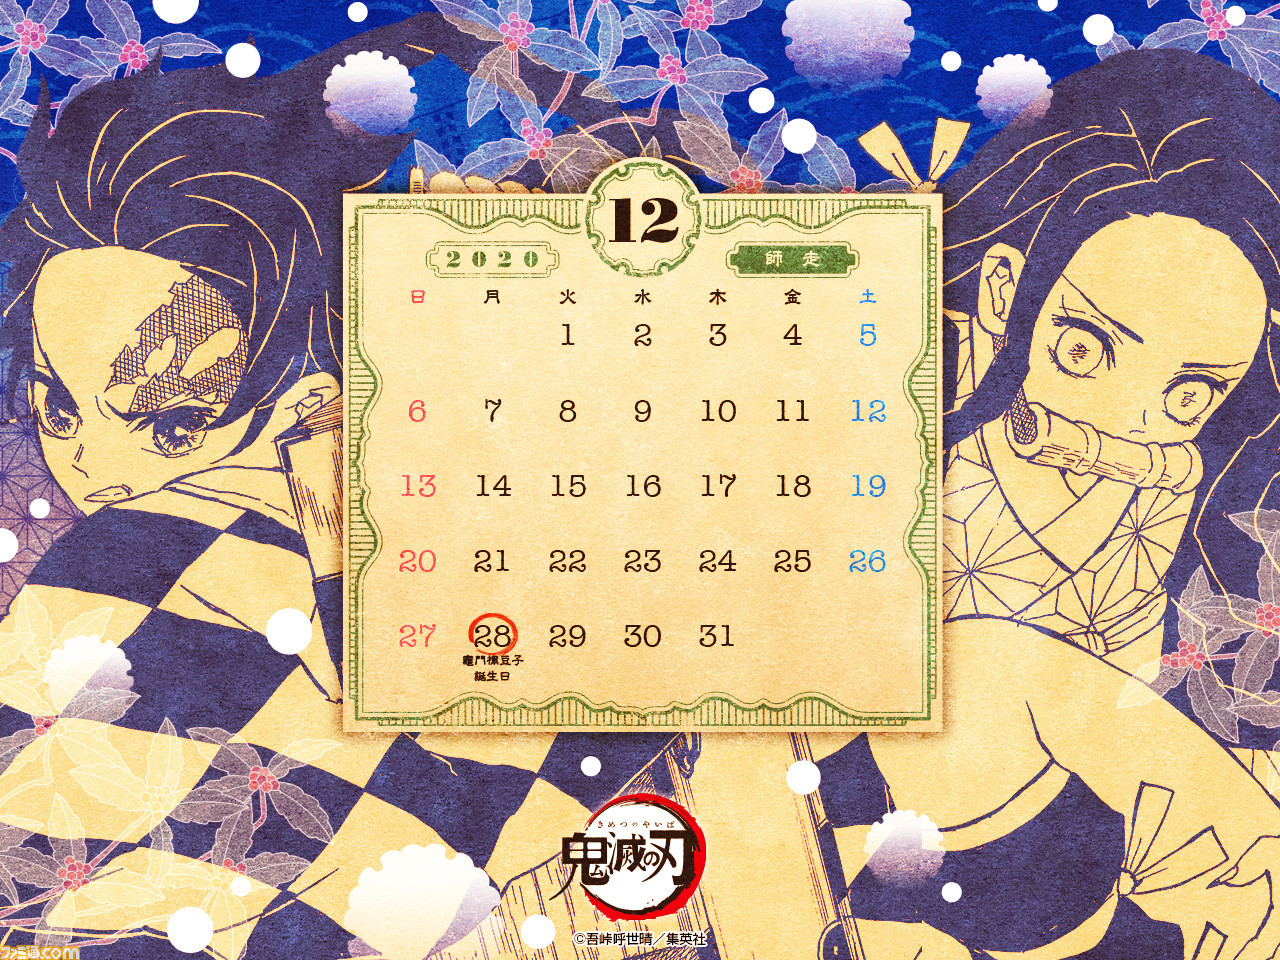 鬼滅の刃 12月分のカレンダー壁紙が公開 降りしきる雪の中 炭治郎と禰豆子は何を思うのか ゲーム エンタメ最新情報のファミ通 Com